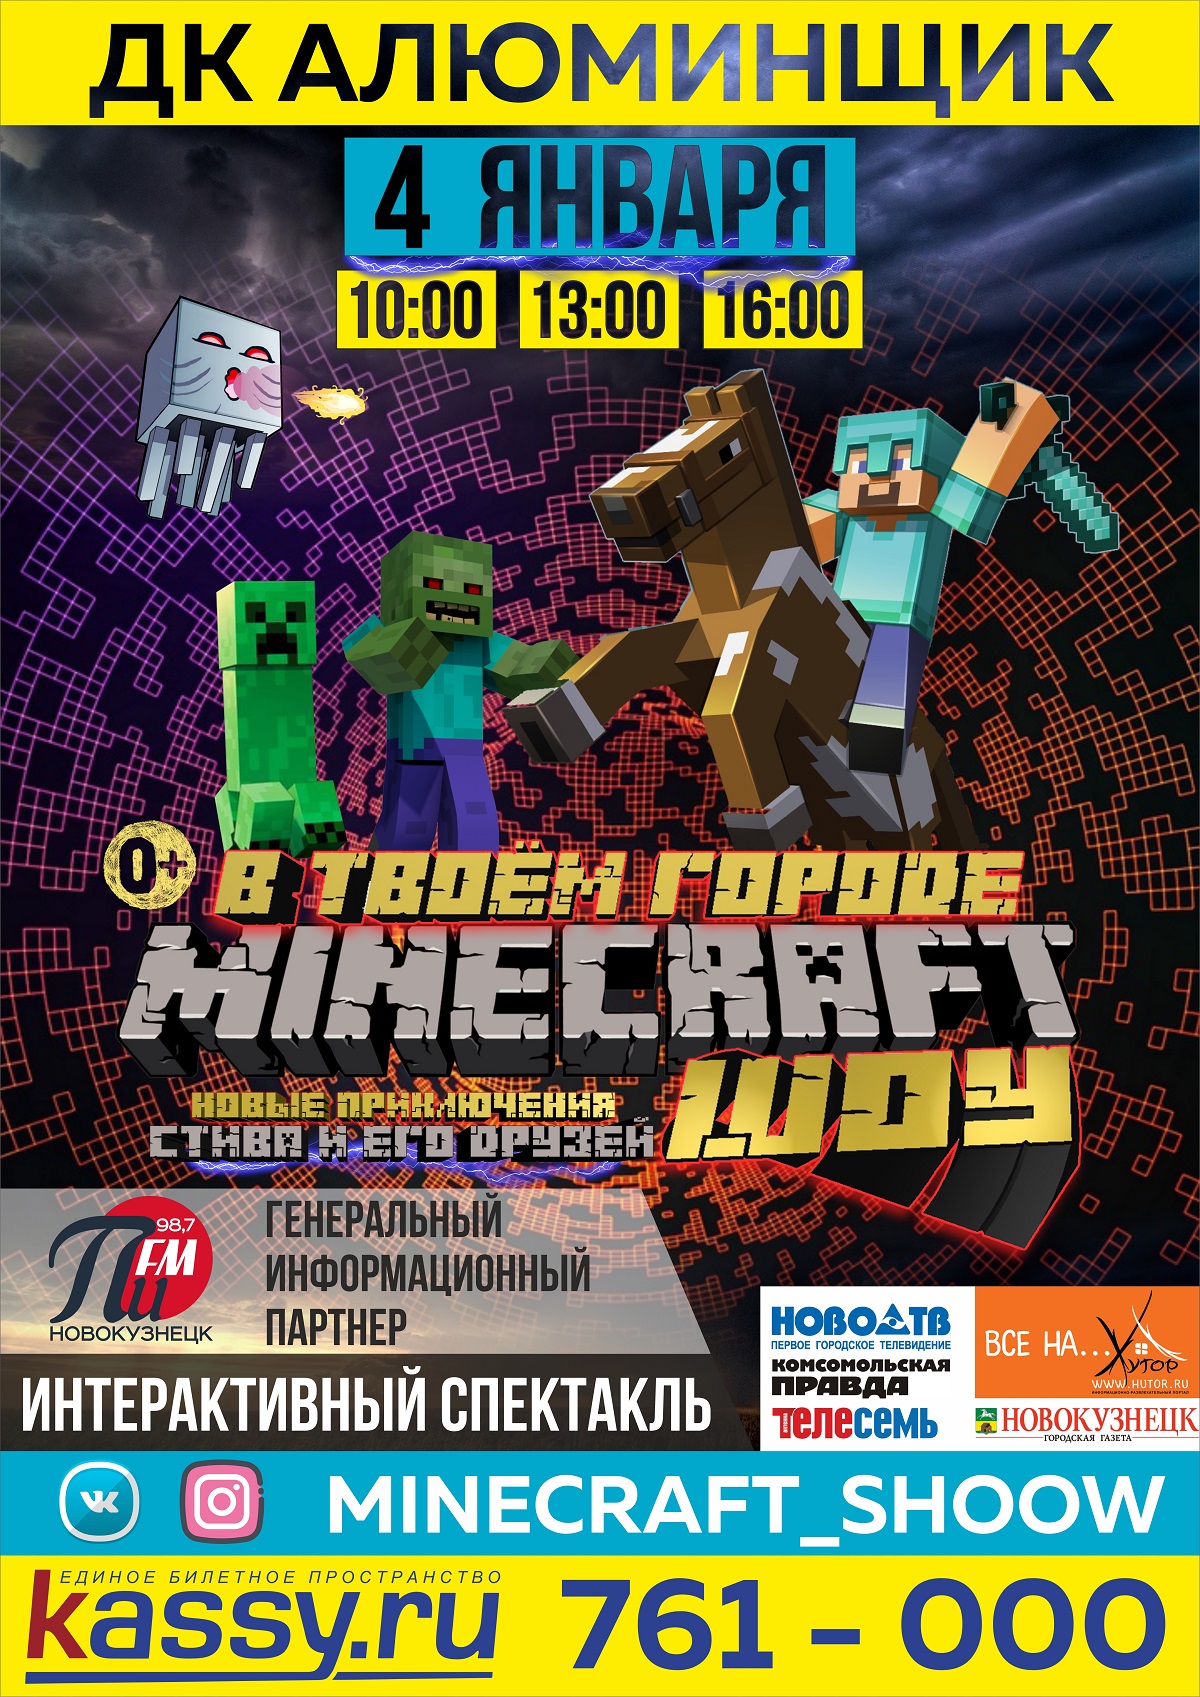 04 января в ДК «АЛЮМИНЩИК» интерактивный спектакль «Minecraft шоу» 0+